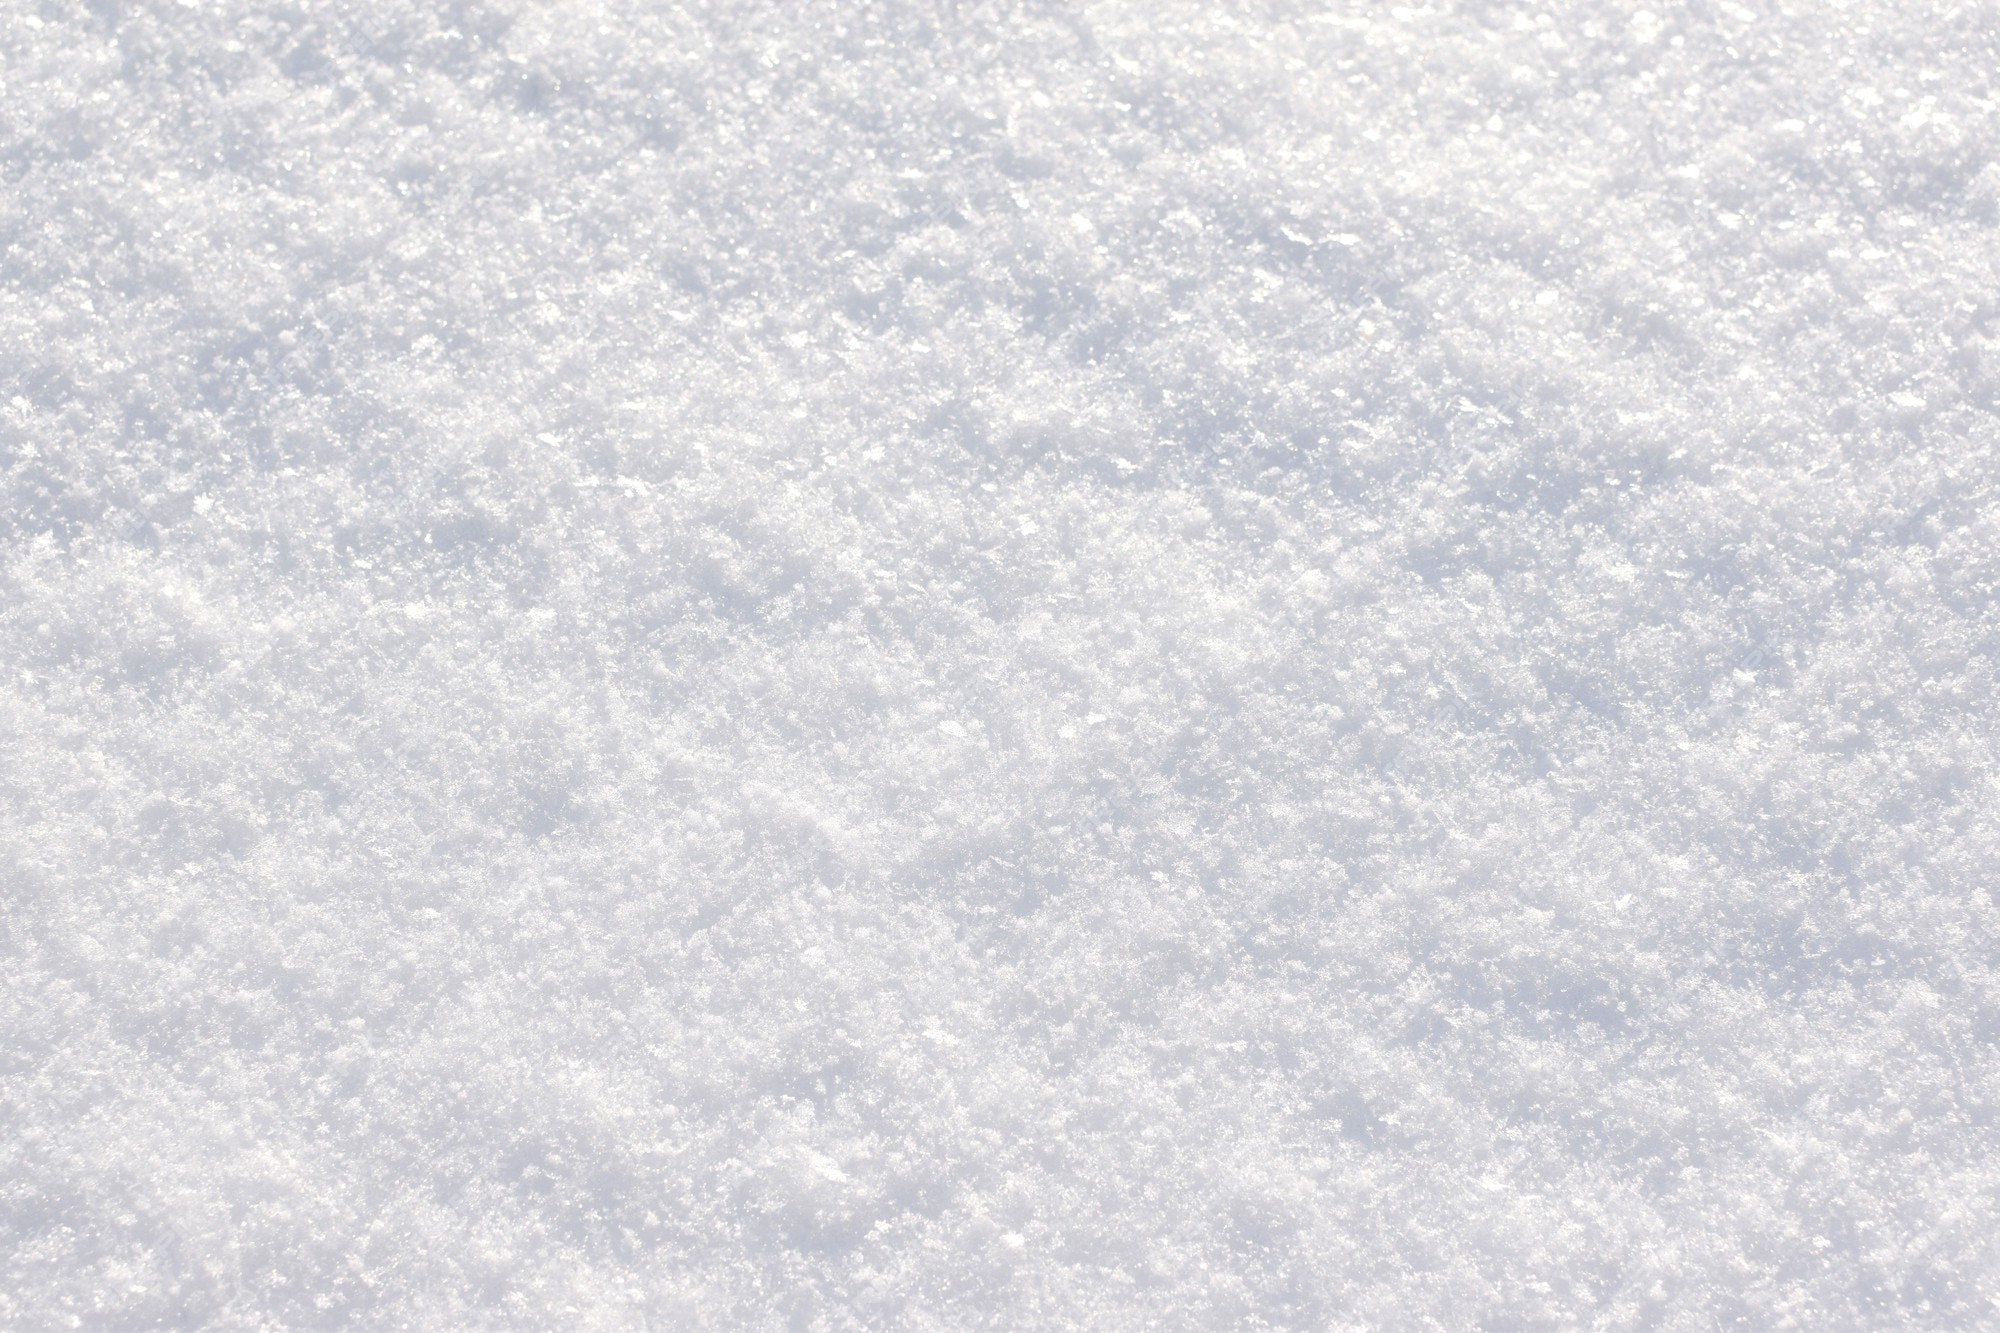 Premium Photo | Snow texture. snow-covered land. soft focus.